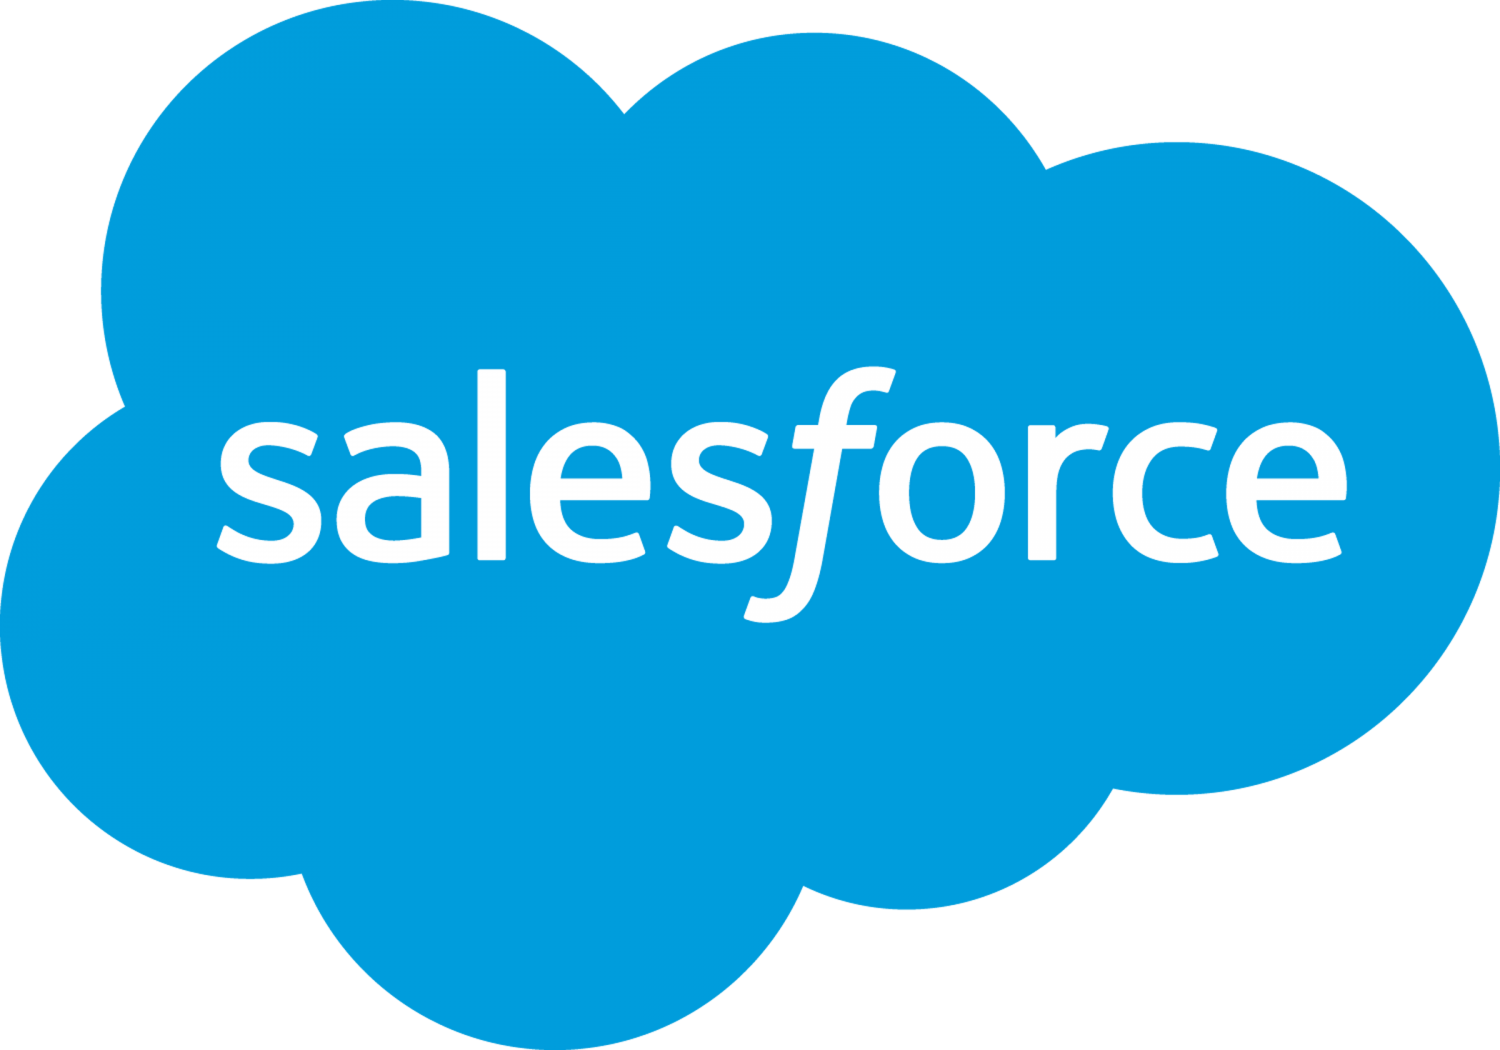 salesforce - ett av de största teknikföretagen i Austin